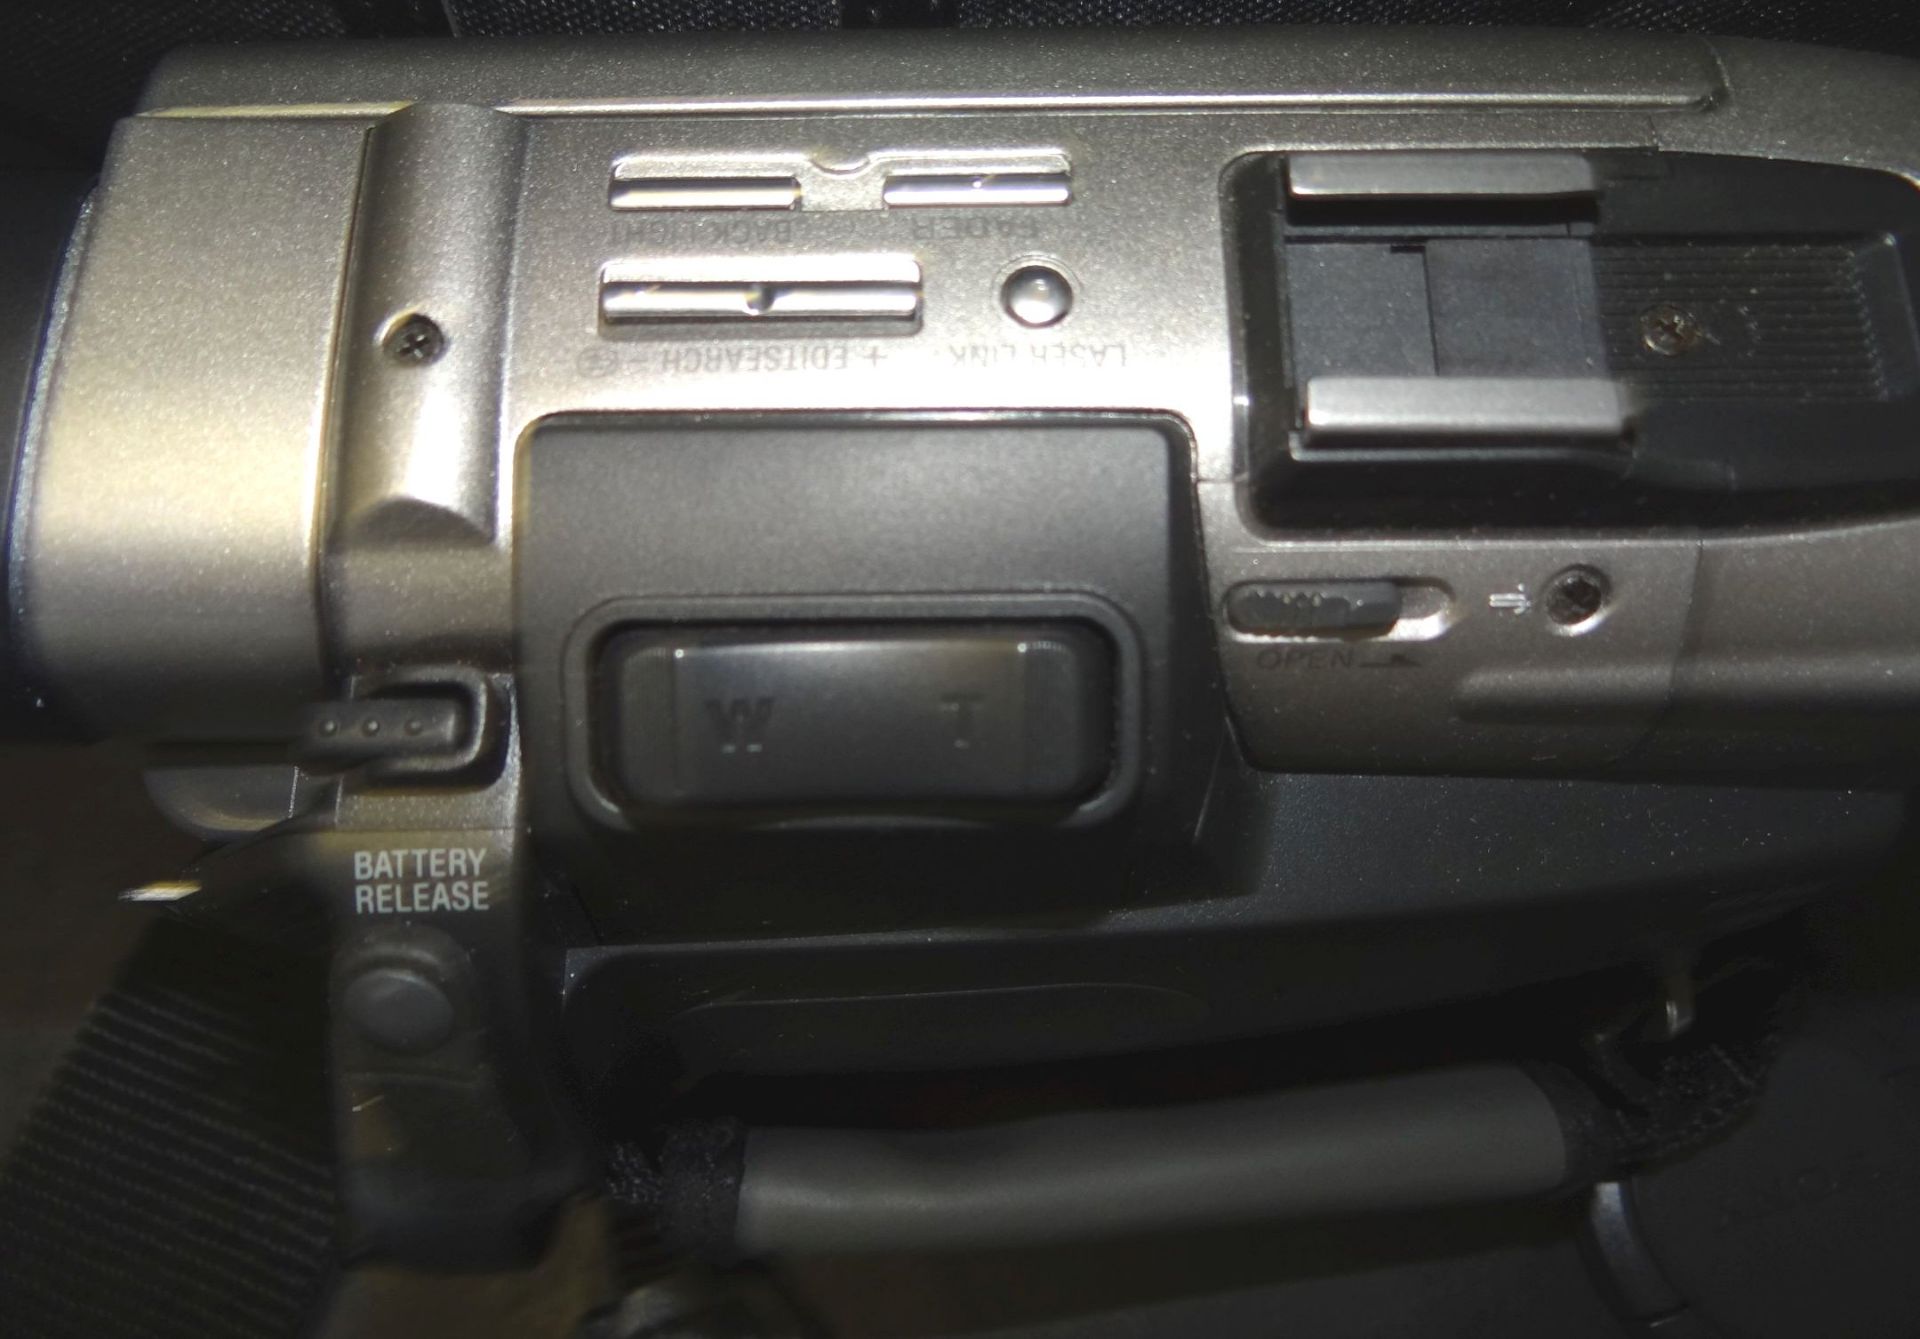 Sony Handycam Vision Mini DV in Tasche, optisch gut erhalten - Bild 3 aus 5